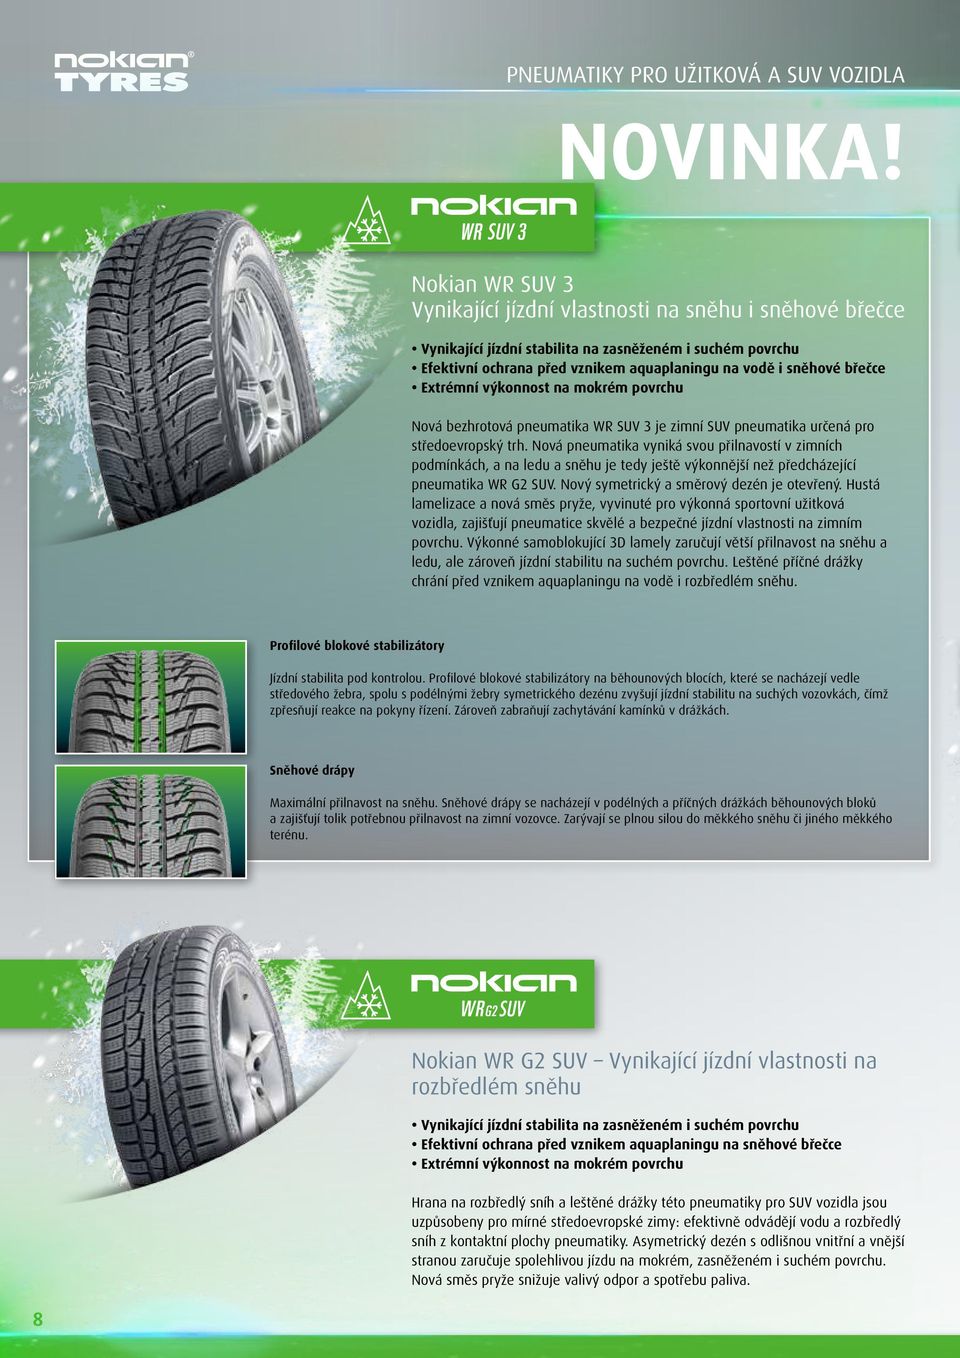 Extrémní výkonnost na mokrém povrchu Nová bezhrotová pneumatika WR SUV 3 je zimní SUV pneumatika určená pro středoevropský trh.